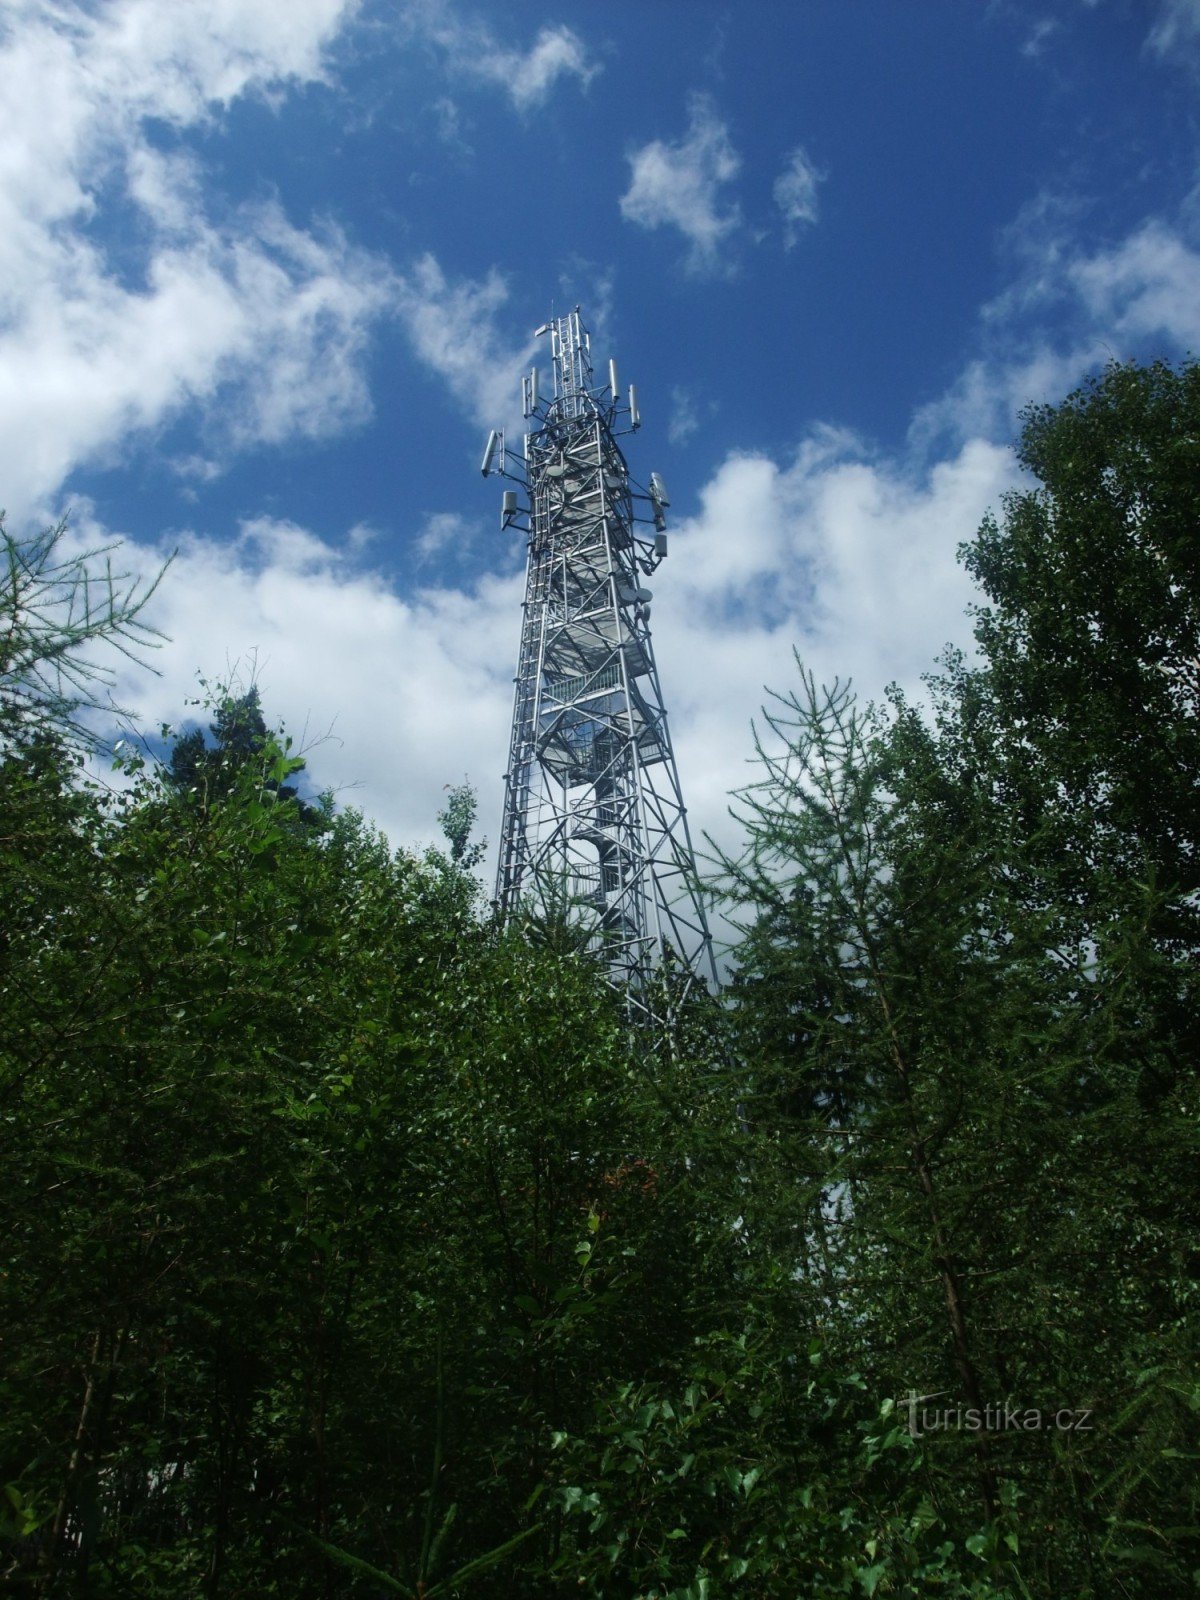 Tháp quan sát Tobiášův vrch